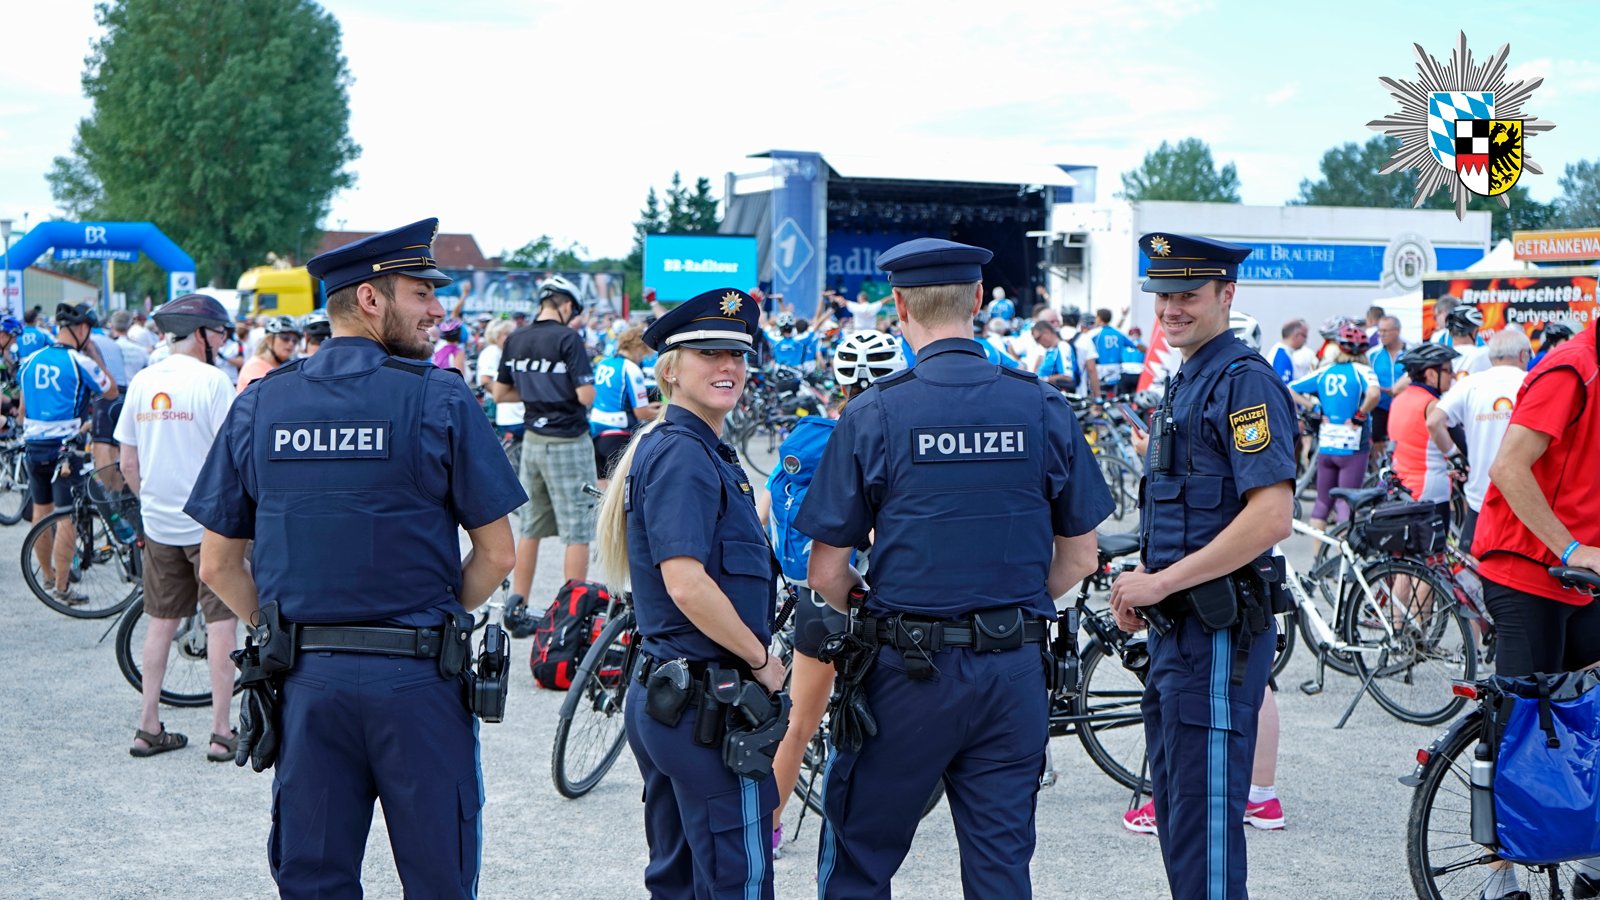 Polizei Bayern Twitter